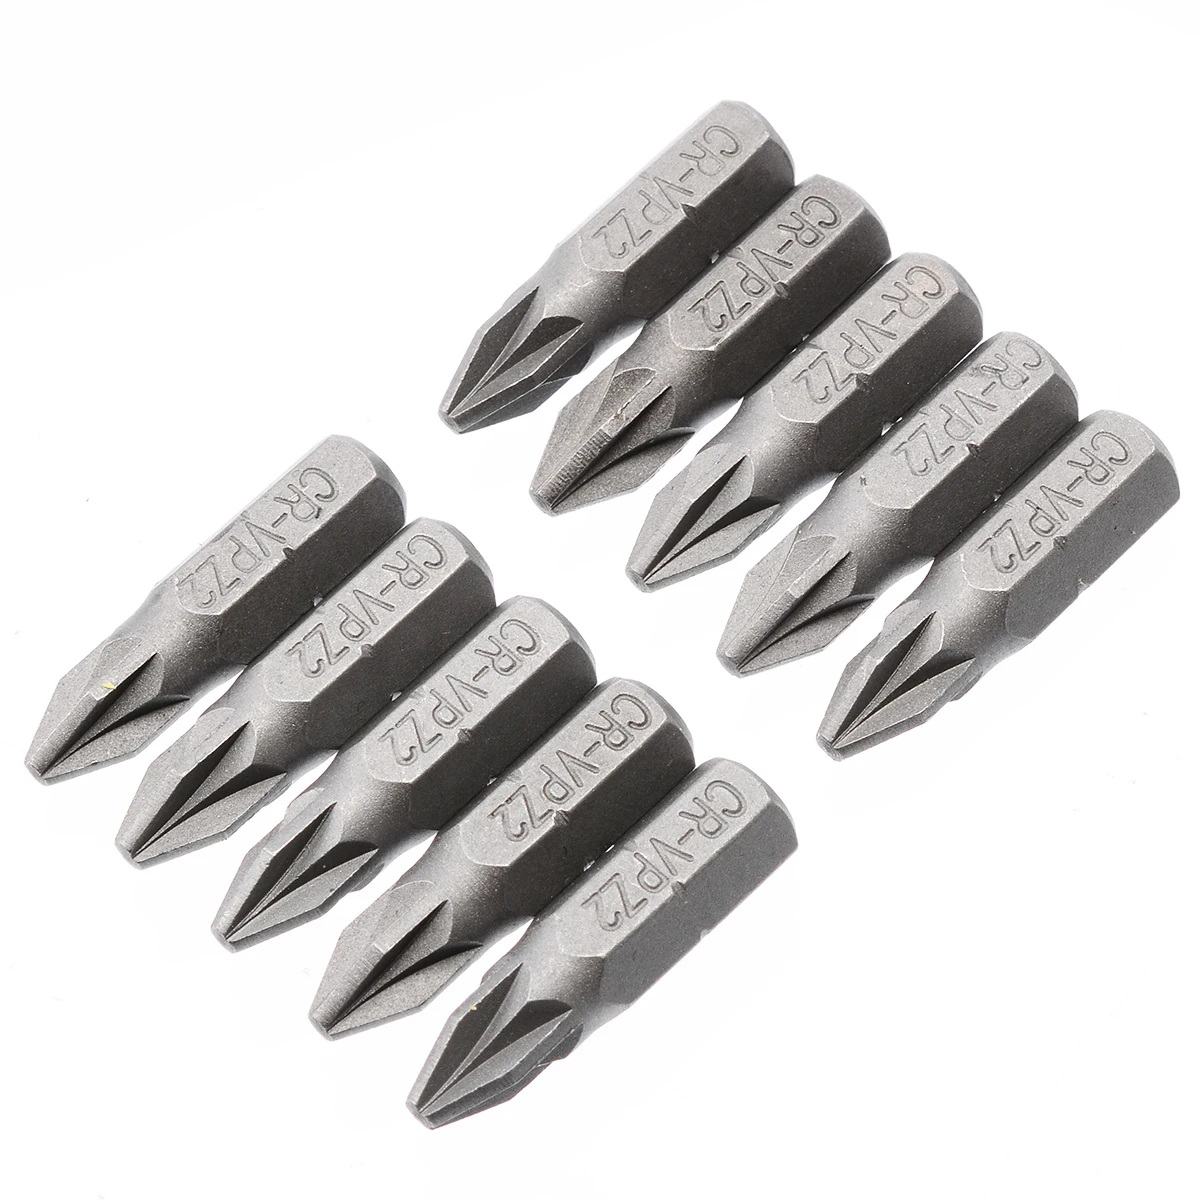 

10Pcs Silver Pozi 2 PZ2 x 25mm Alloy Steel Drive Screwdriver Bits Hex Tools 1/4'' Hex Shank Hand Tools Set